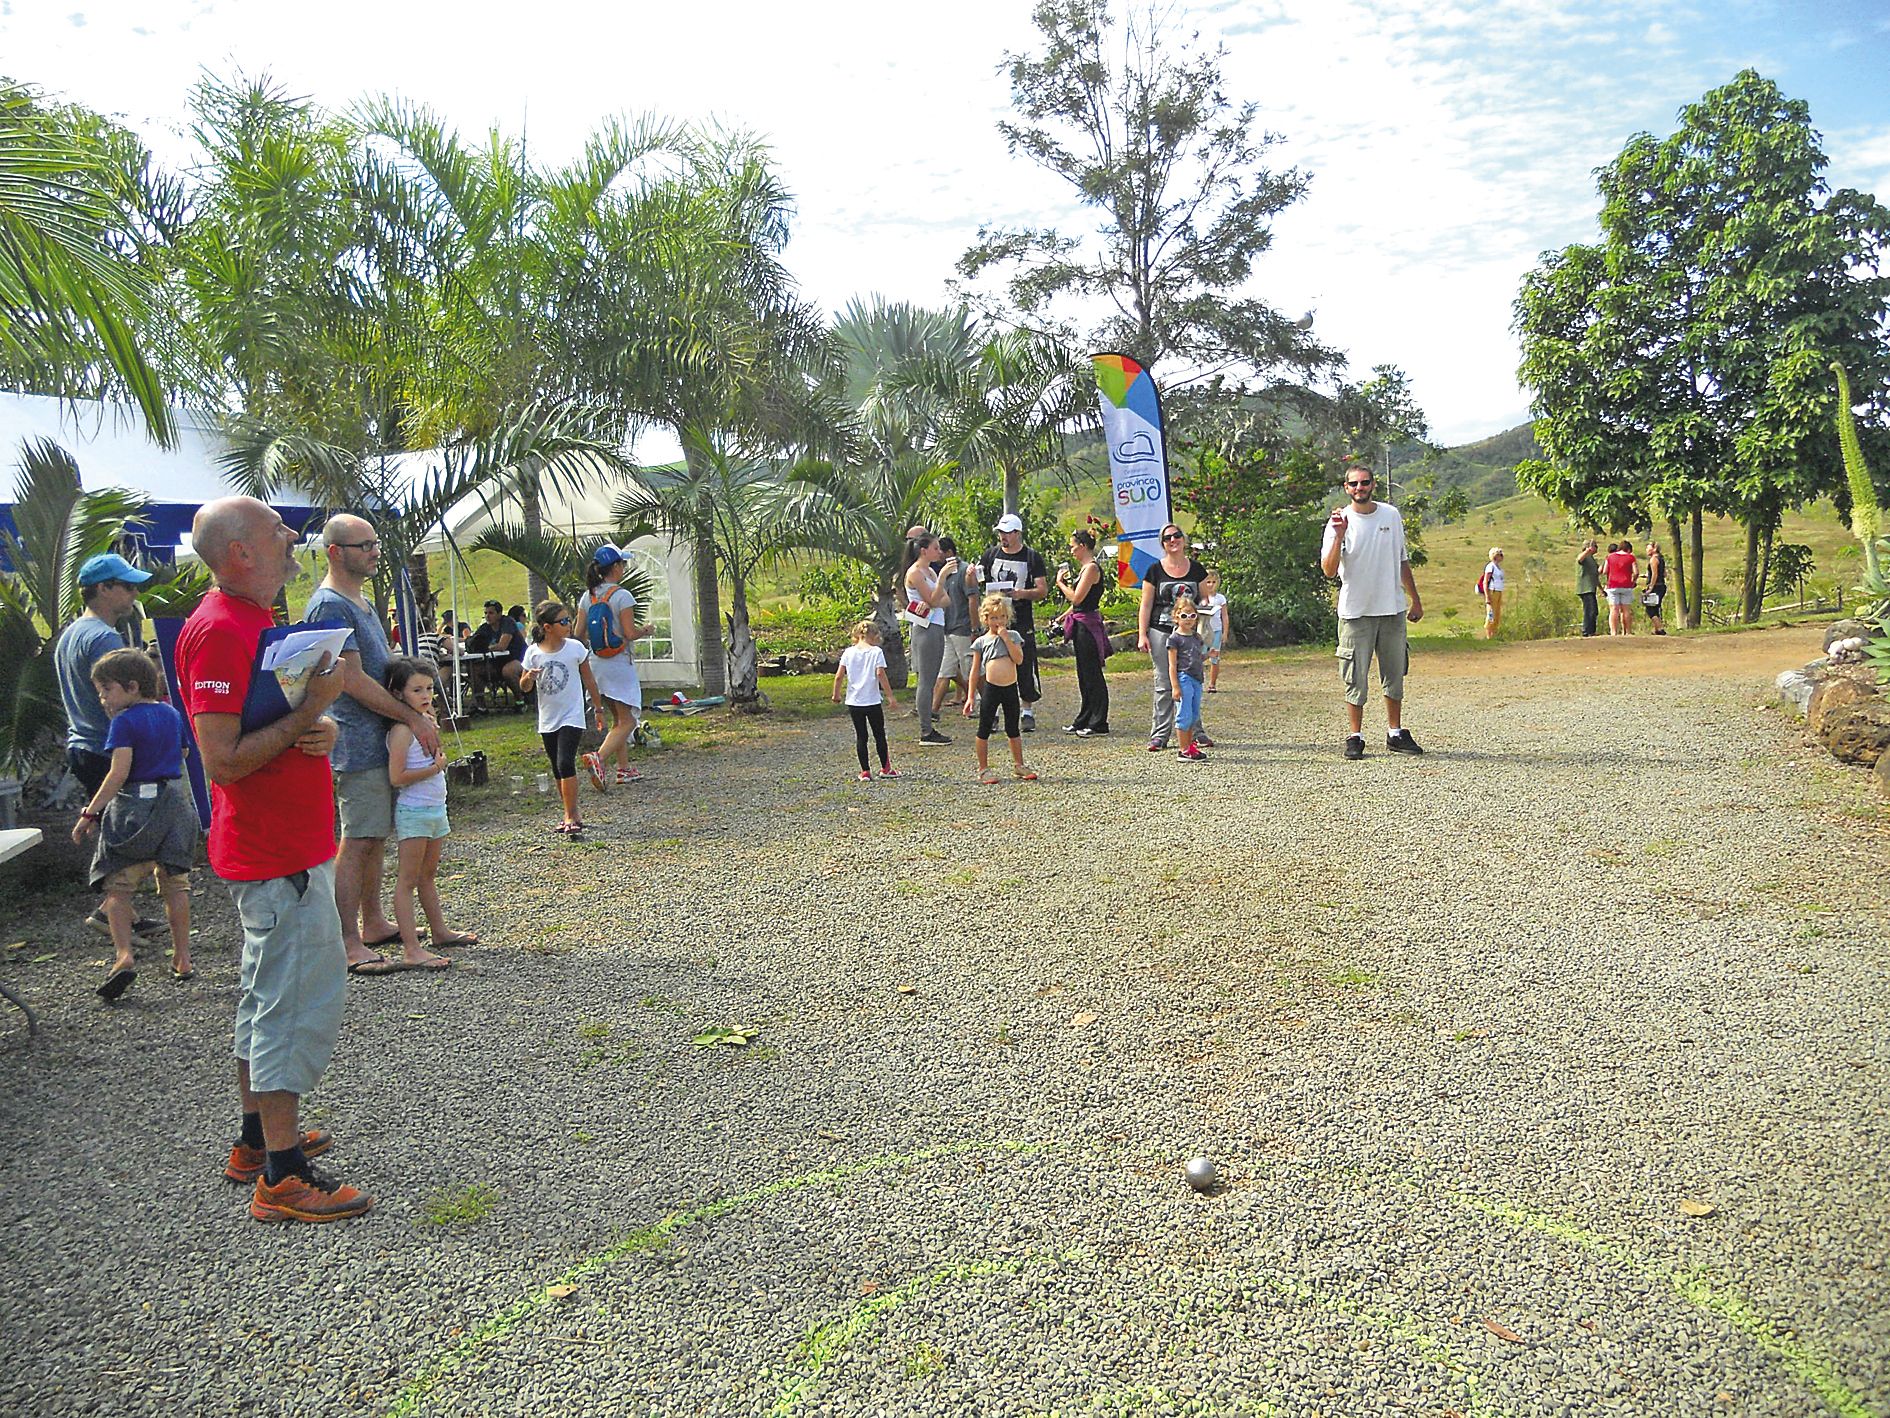 Des jeux familiaux comme le lancer de boules de pétanque ont permis aux équipes d’engranger des points supplémentaires.